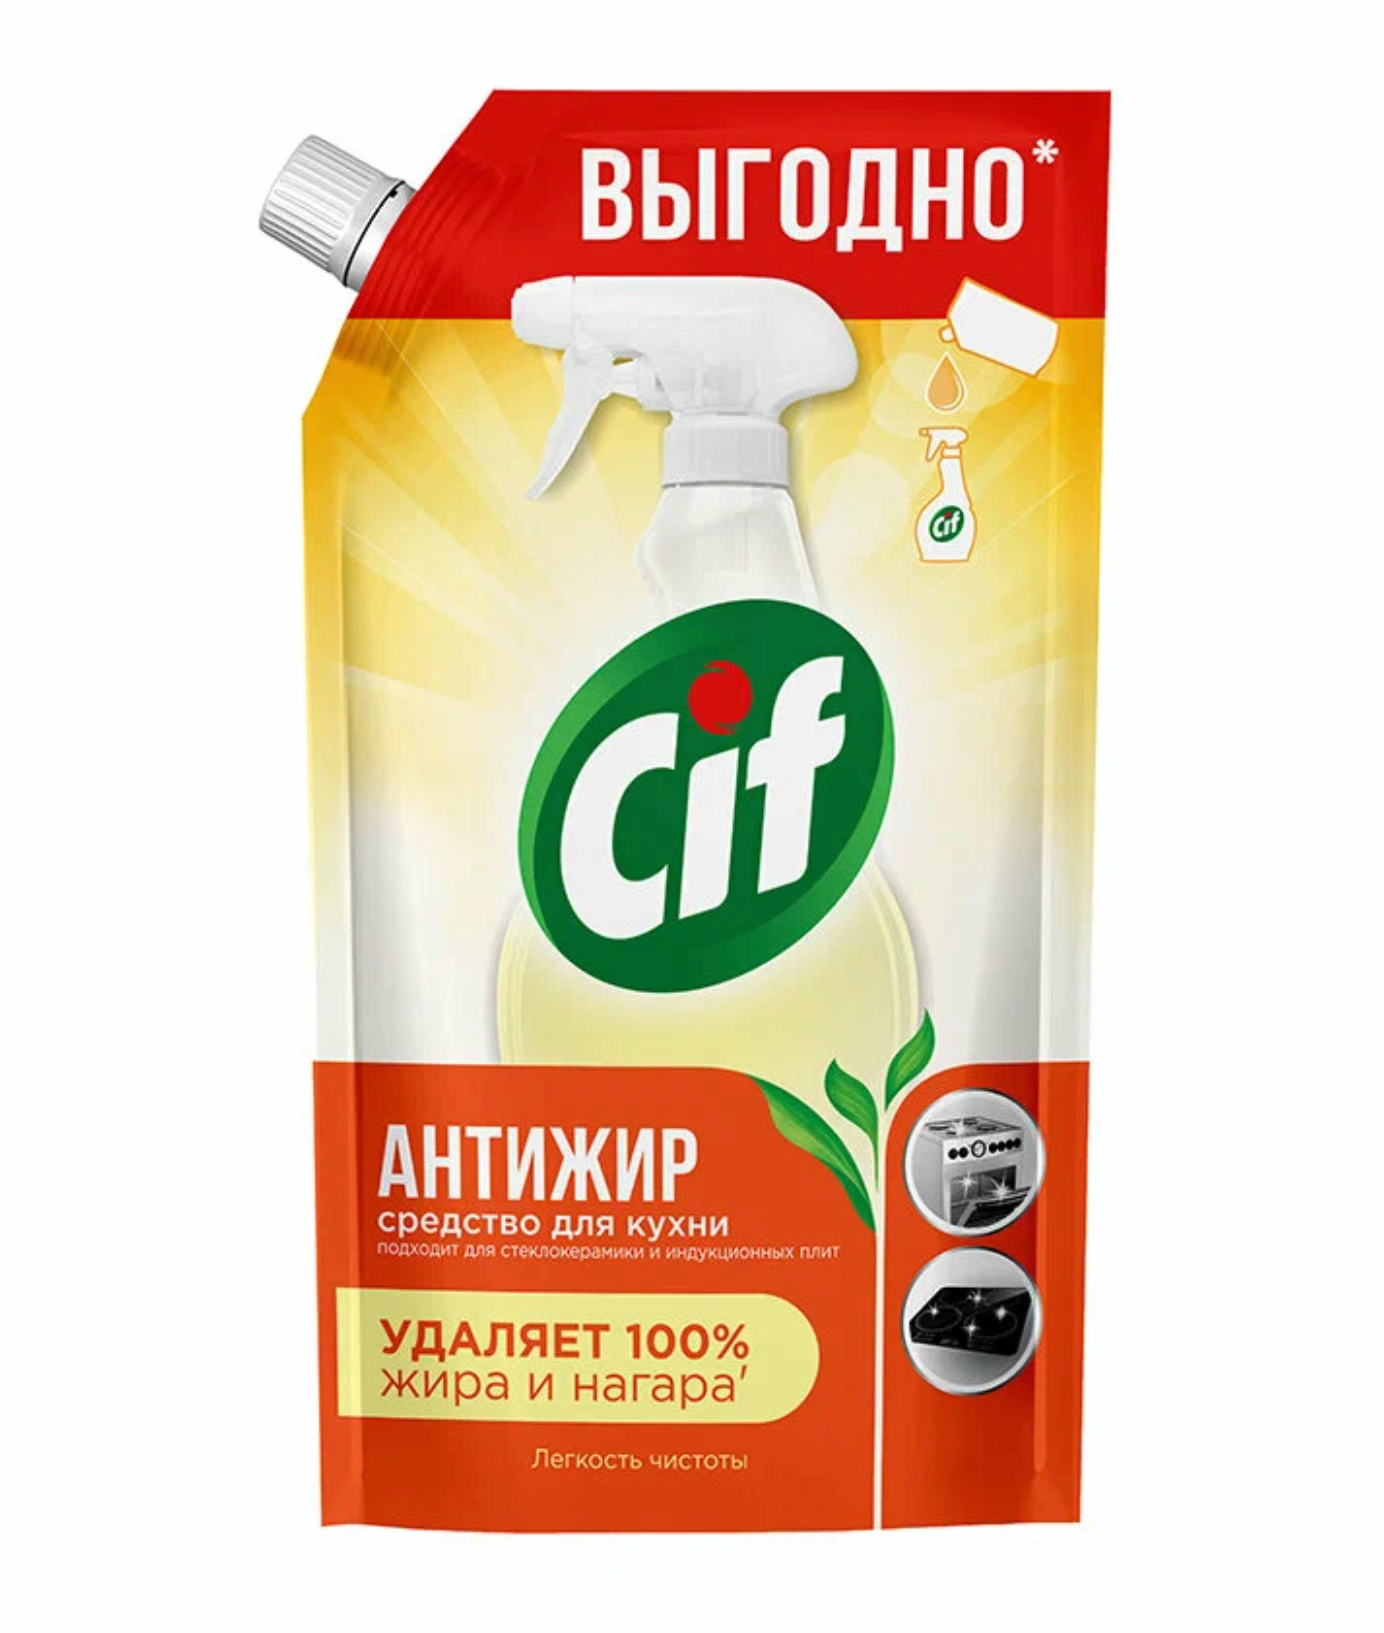 Сиф / Cif - Чистящее средство для кухни Антижир легкость чистоты 500 мл (сменка)